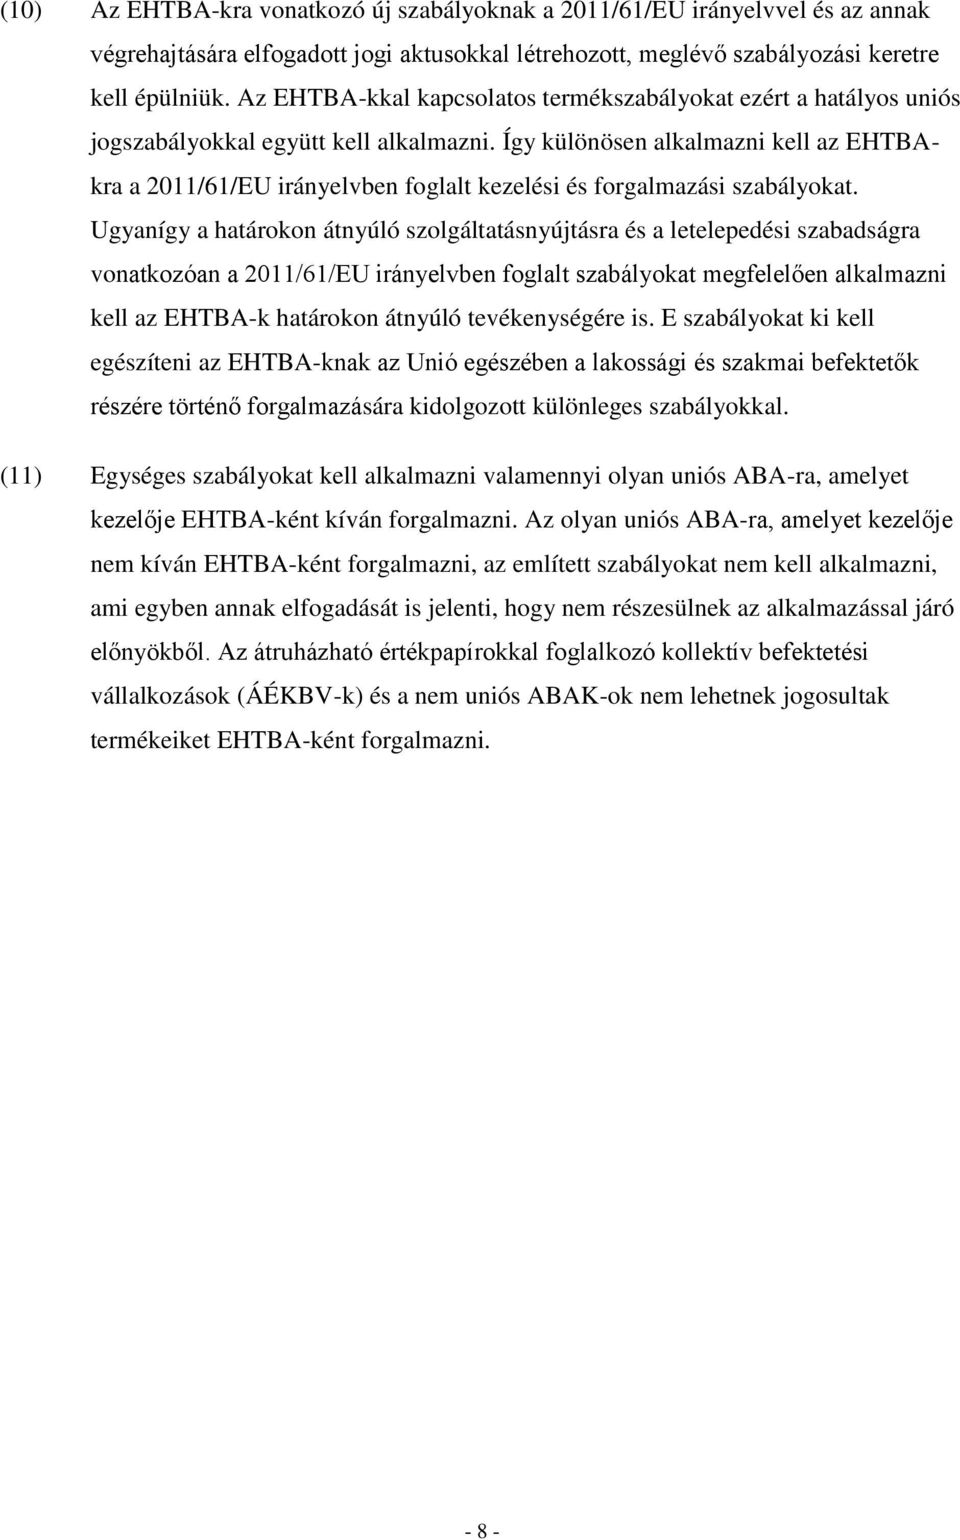 Így különösen alkalmazni kell az EHTBAkra a 2011/61/EU irányelvben foglalt kezelési és forgalmazási szabályokat.